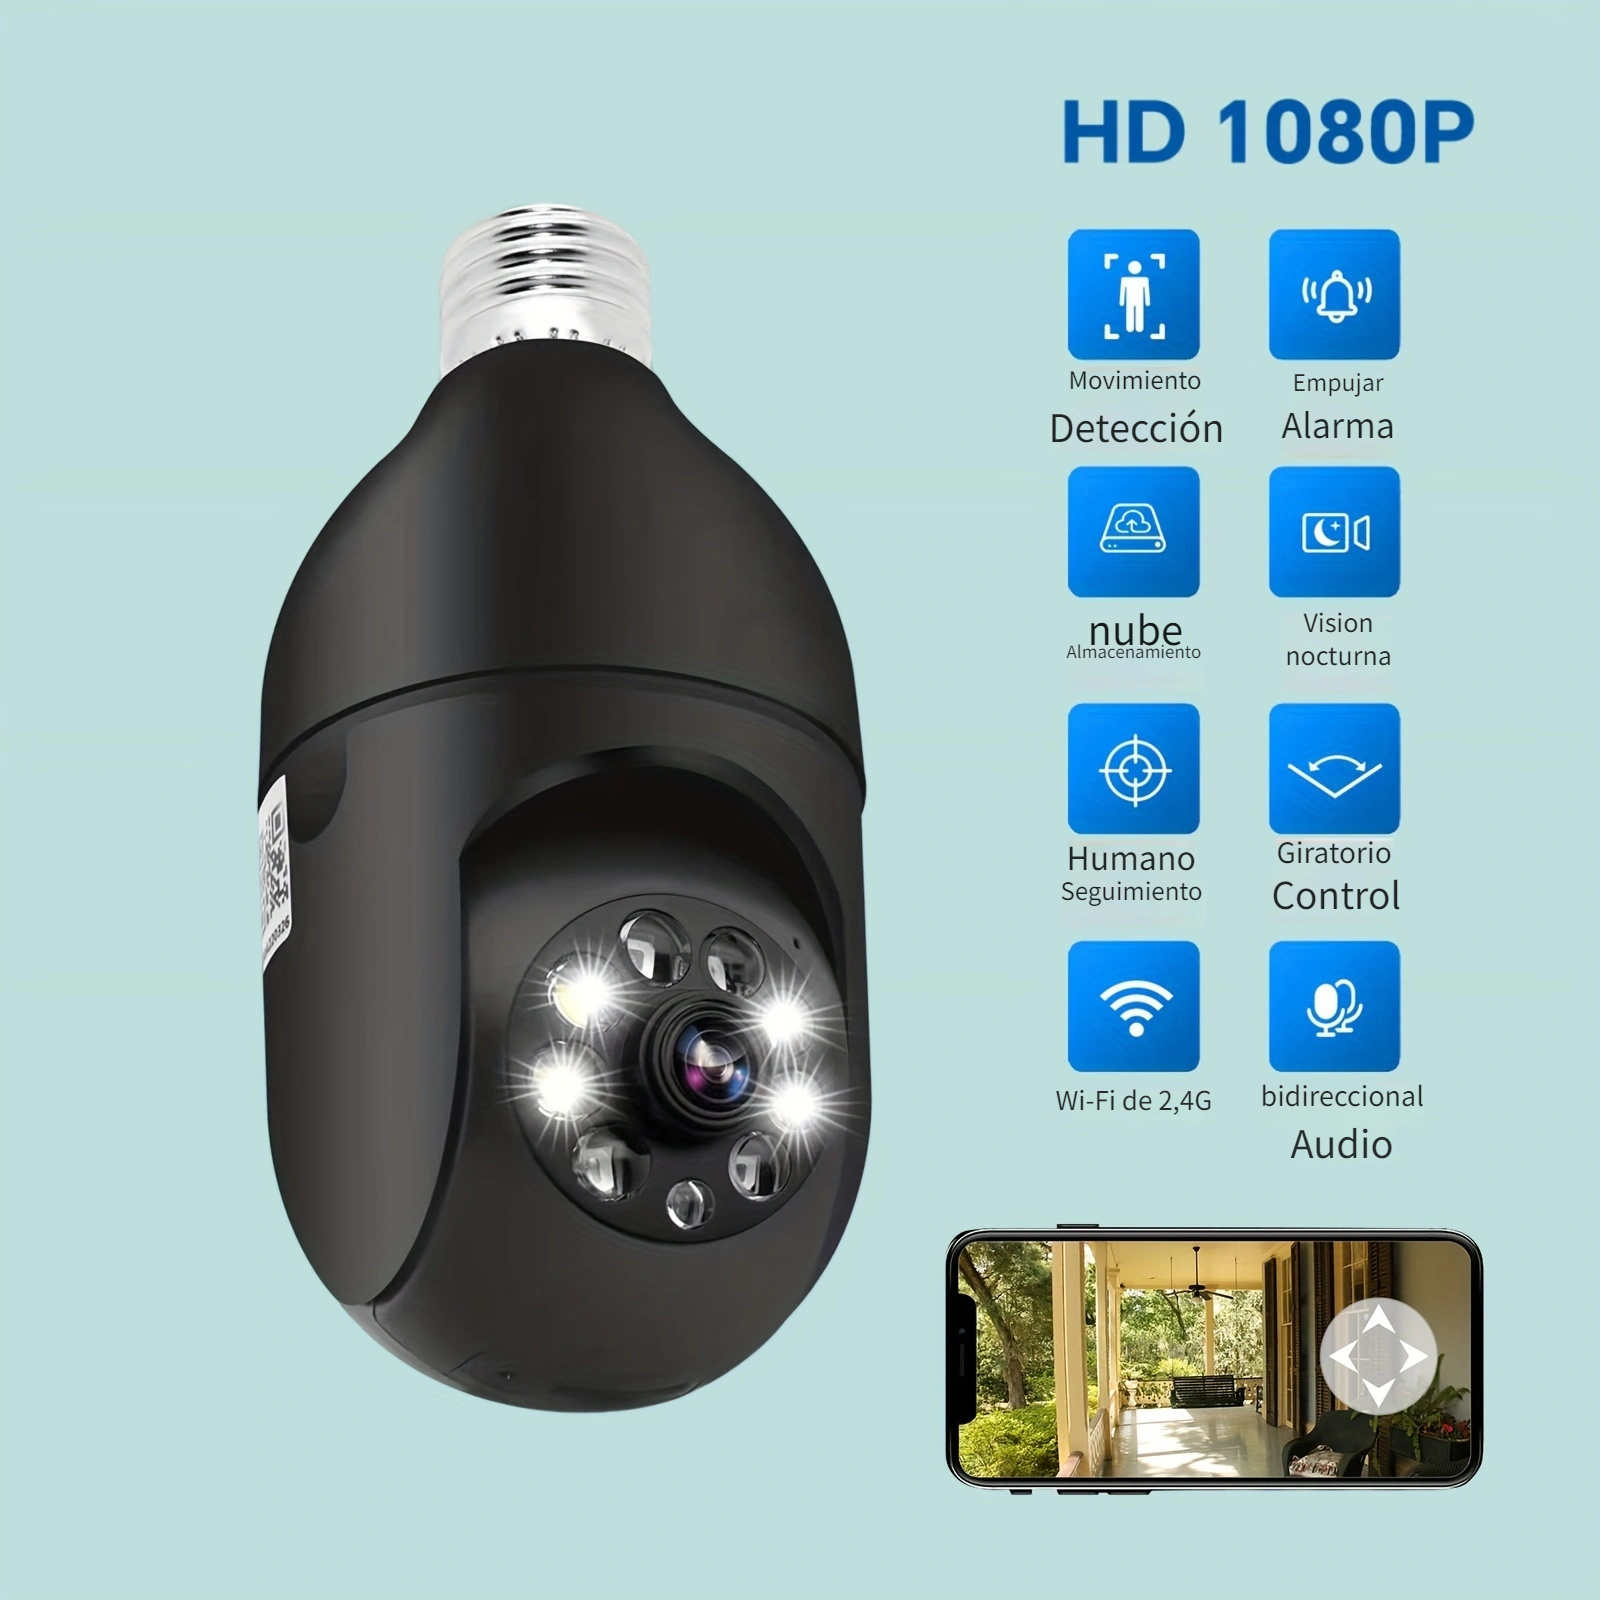 Cámara de bombilla, 1080P cámara de seguridad inalámbrica para el hogar,  360 grados 2.4GHz WiFi Smart vigilancia cam con detección de movimiento